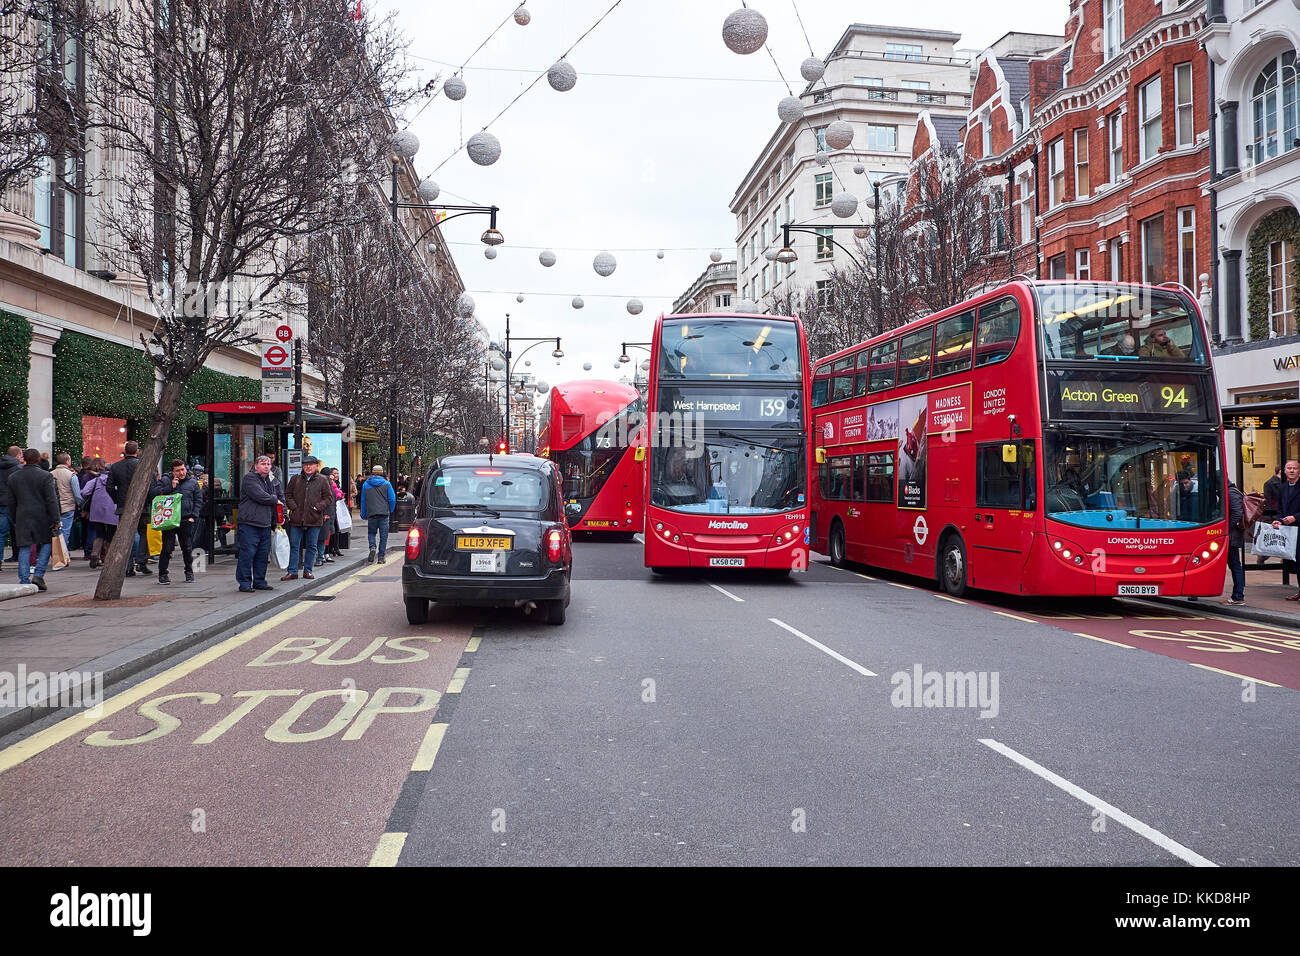 Ville Londres - le 23 décembre 2016 : rue encombrée de red double decker bus, et beaucoup de gens, dans Oxford Street à l'époque de Noël Banque D'Images